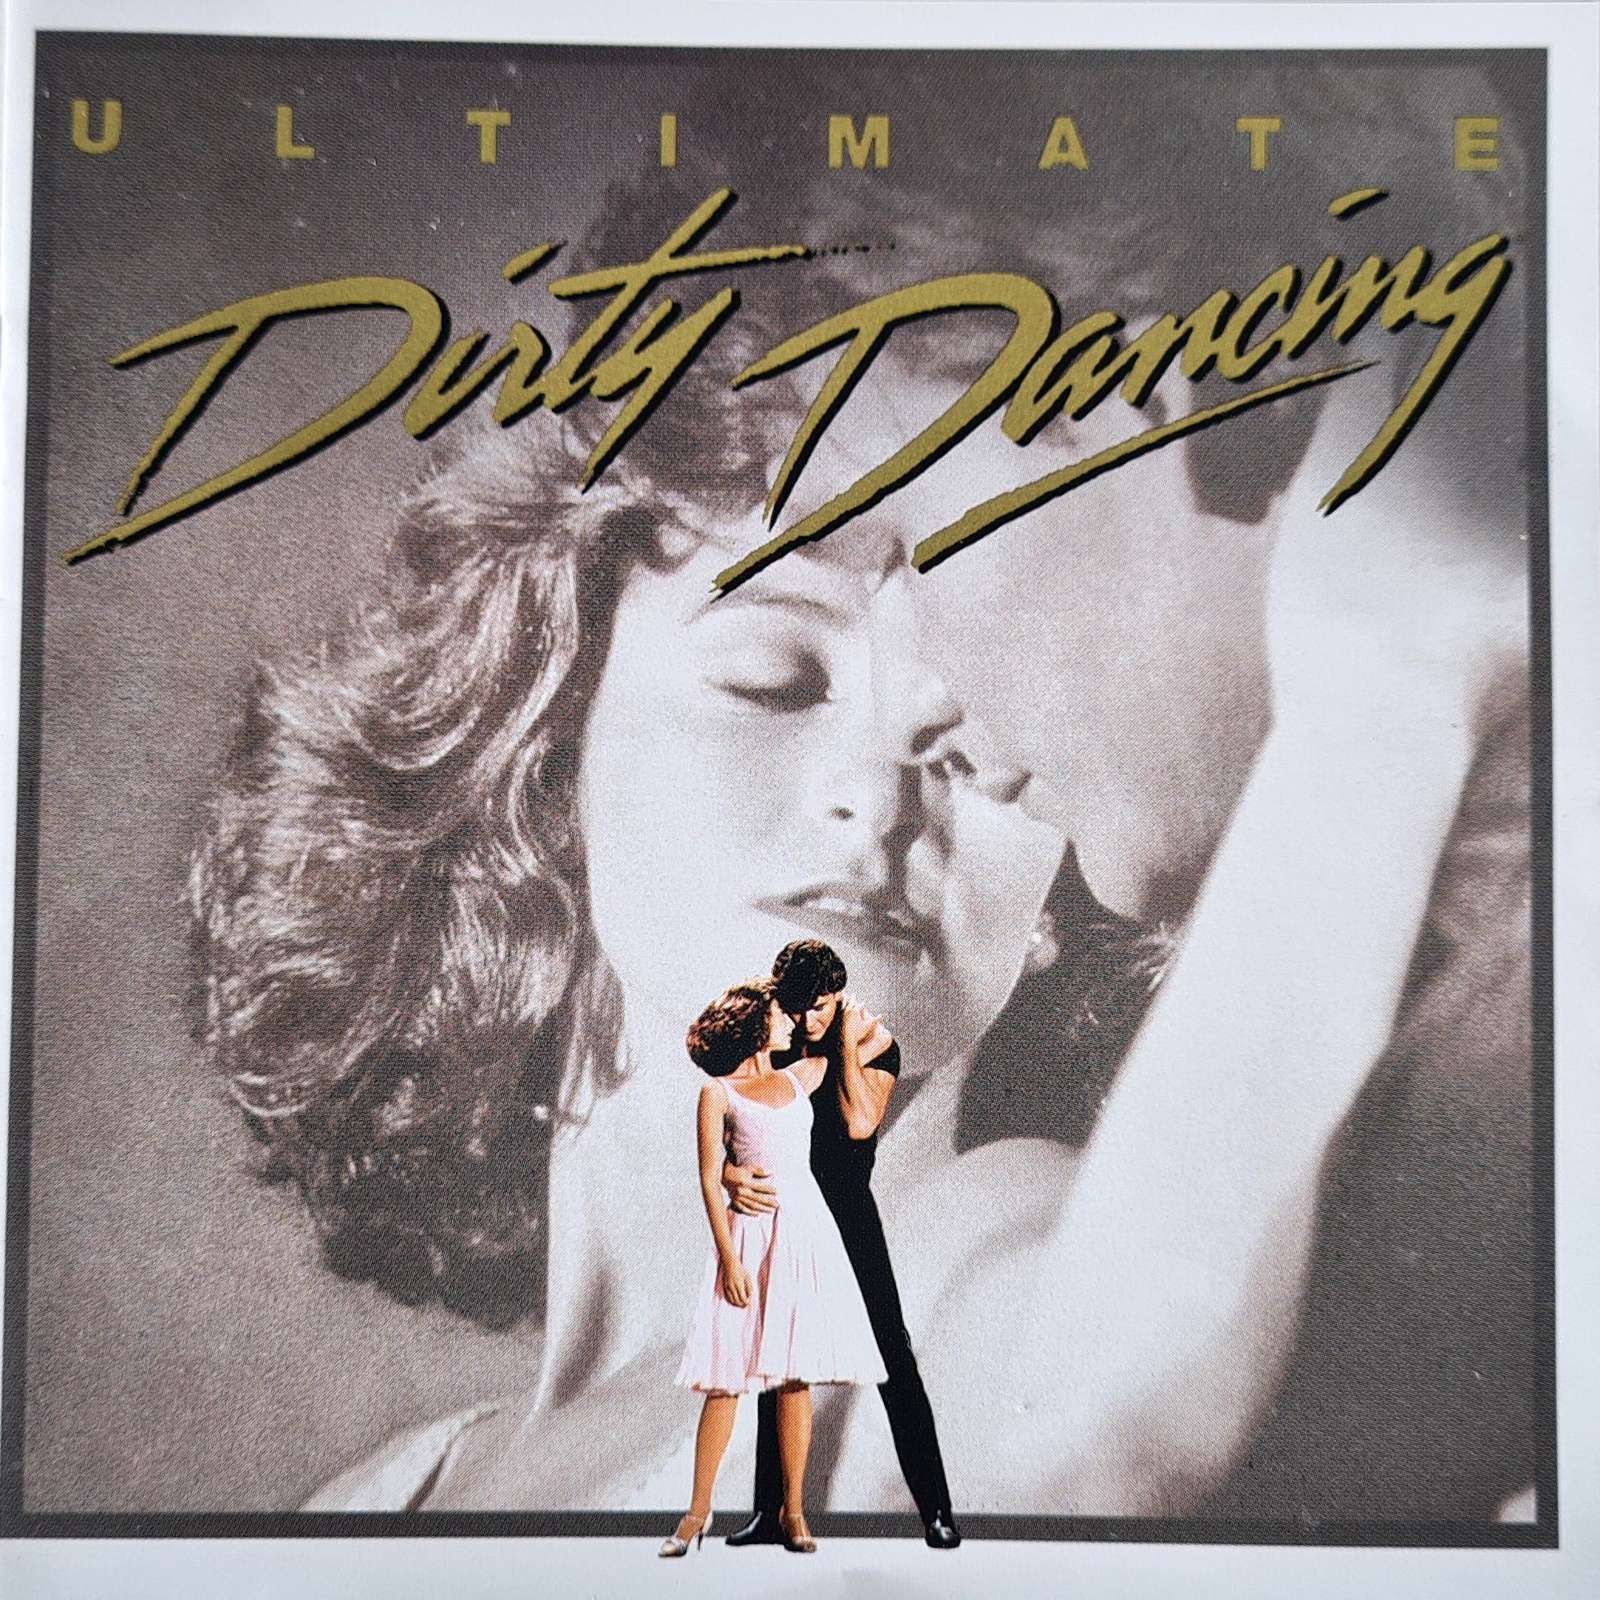 Ultimate Dirty Dancing (CD)